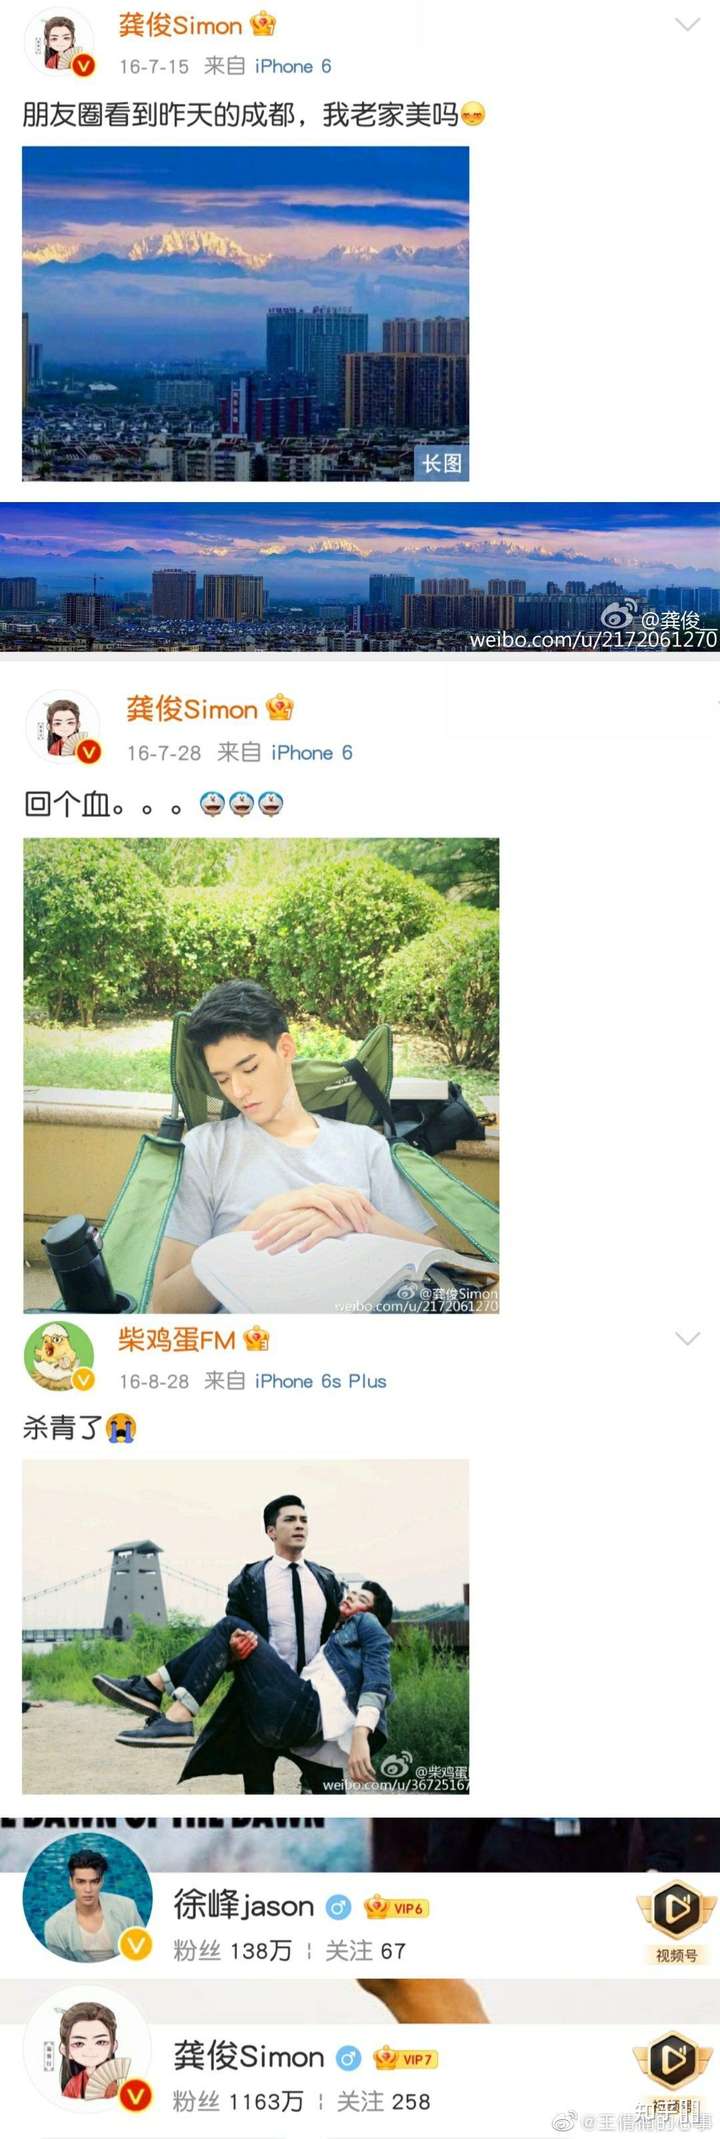 龚俊和徐峰的微博名真的是情侣名吗?